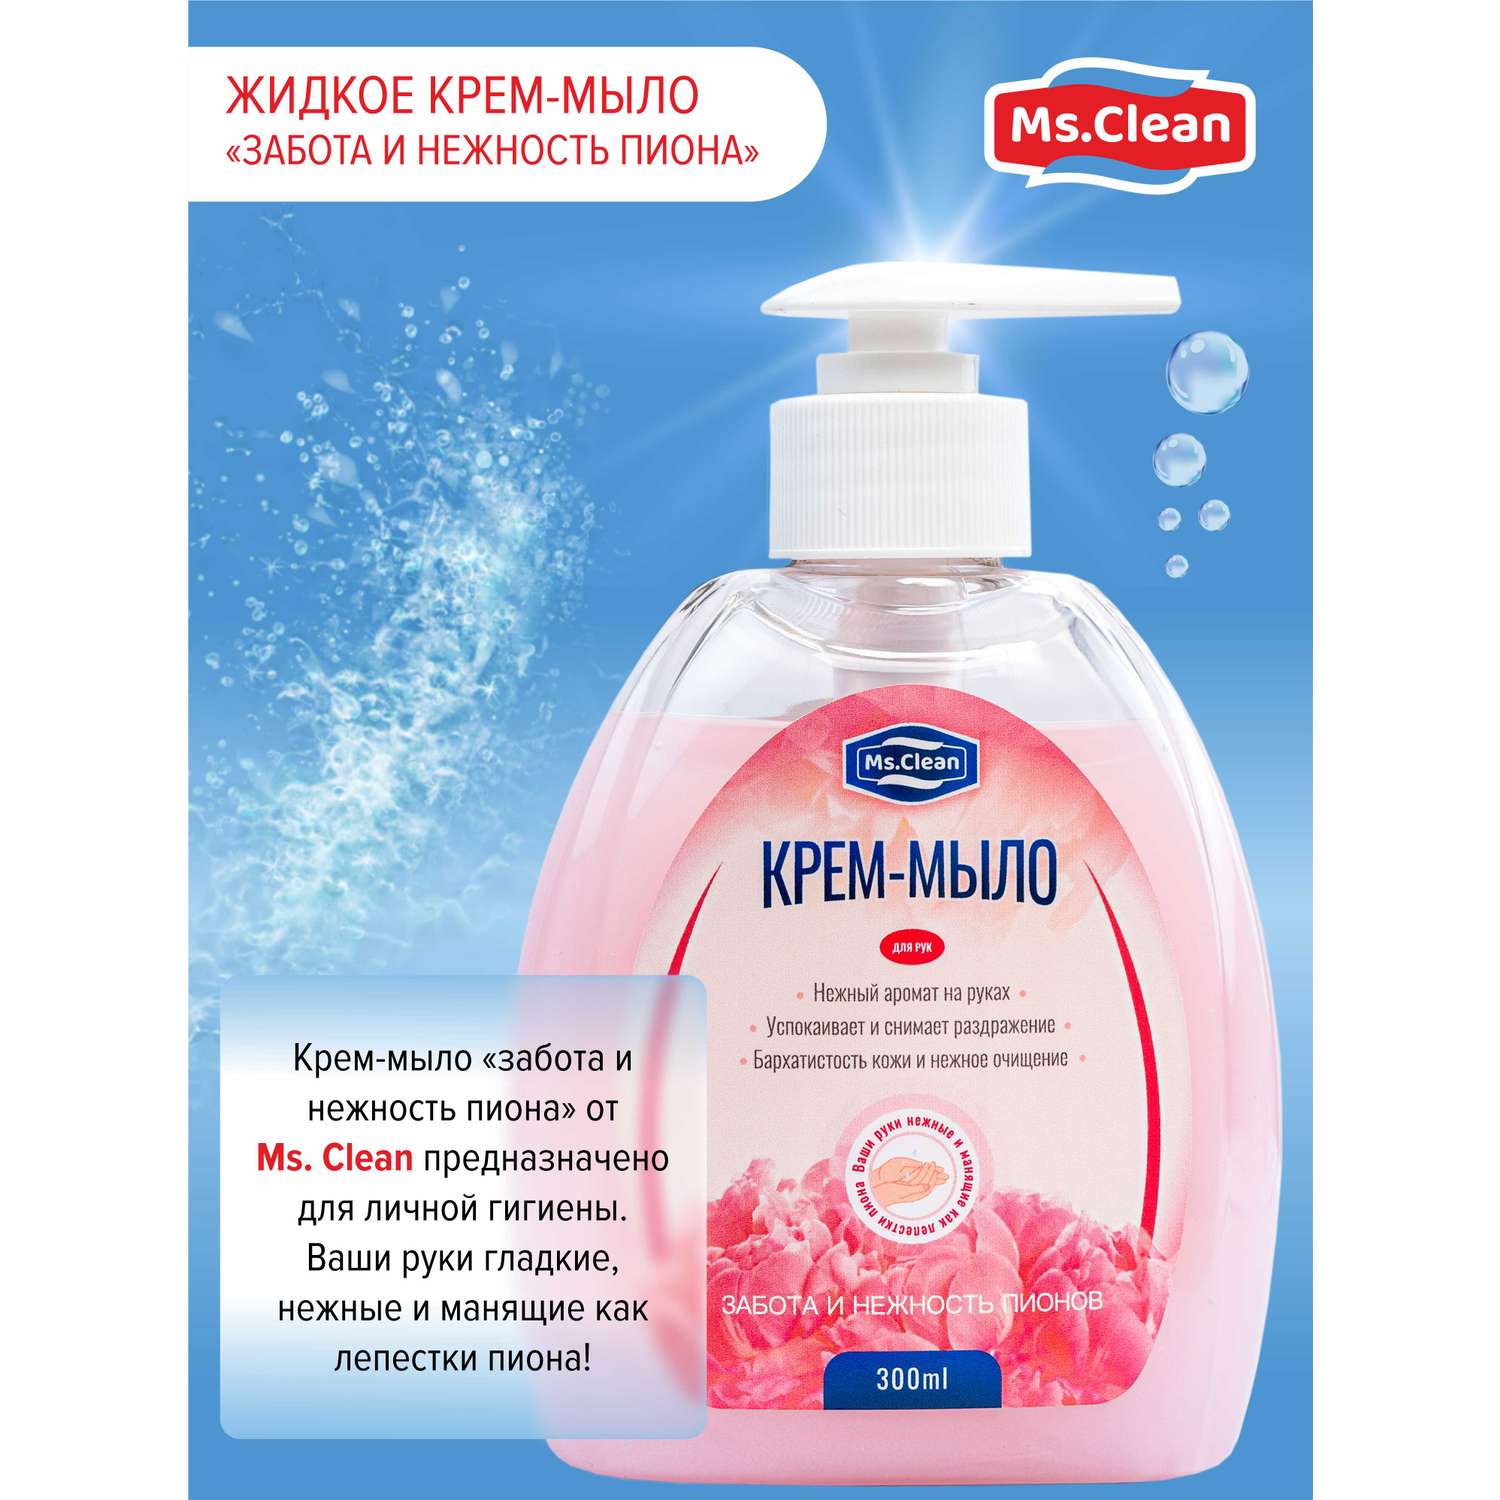 Крем-мыло для рук Ms.Clean забота и нежность пиона 300 мл - фото 5